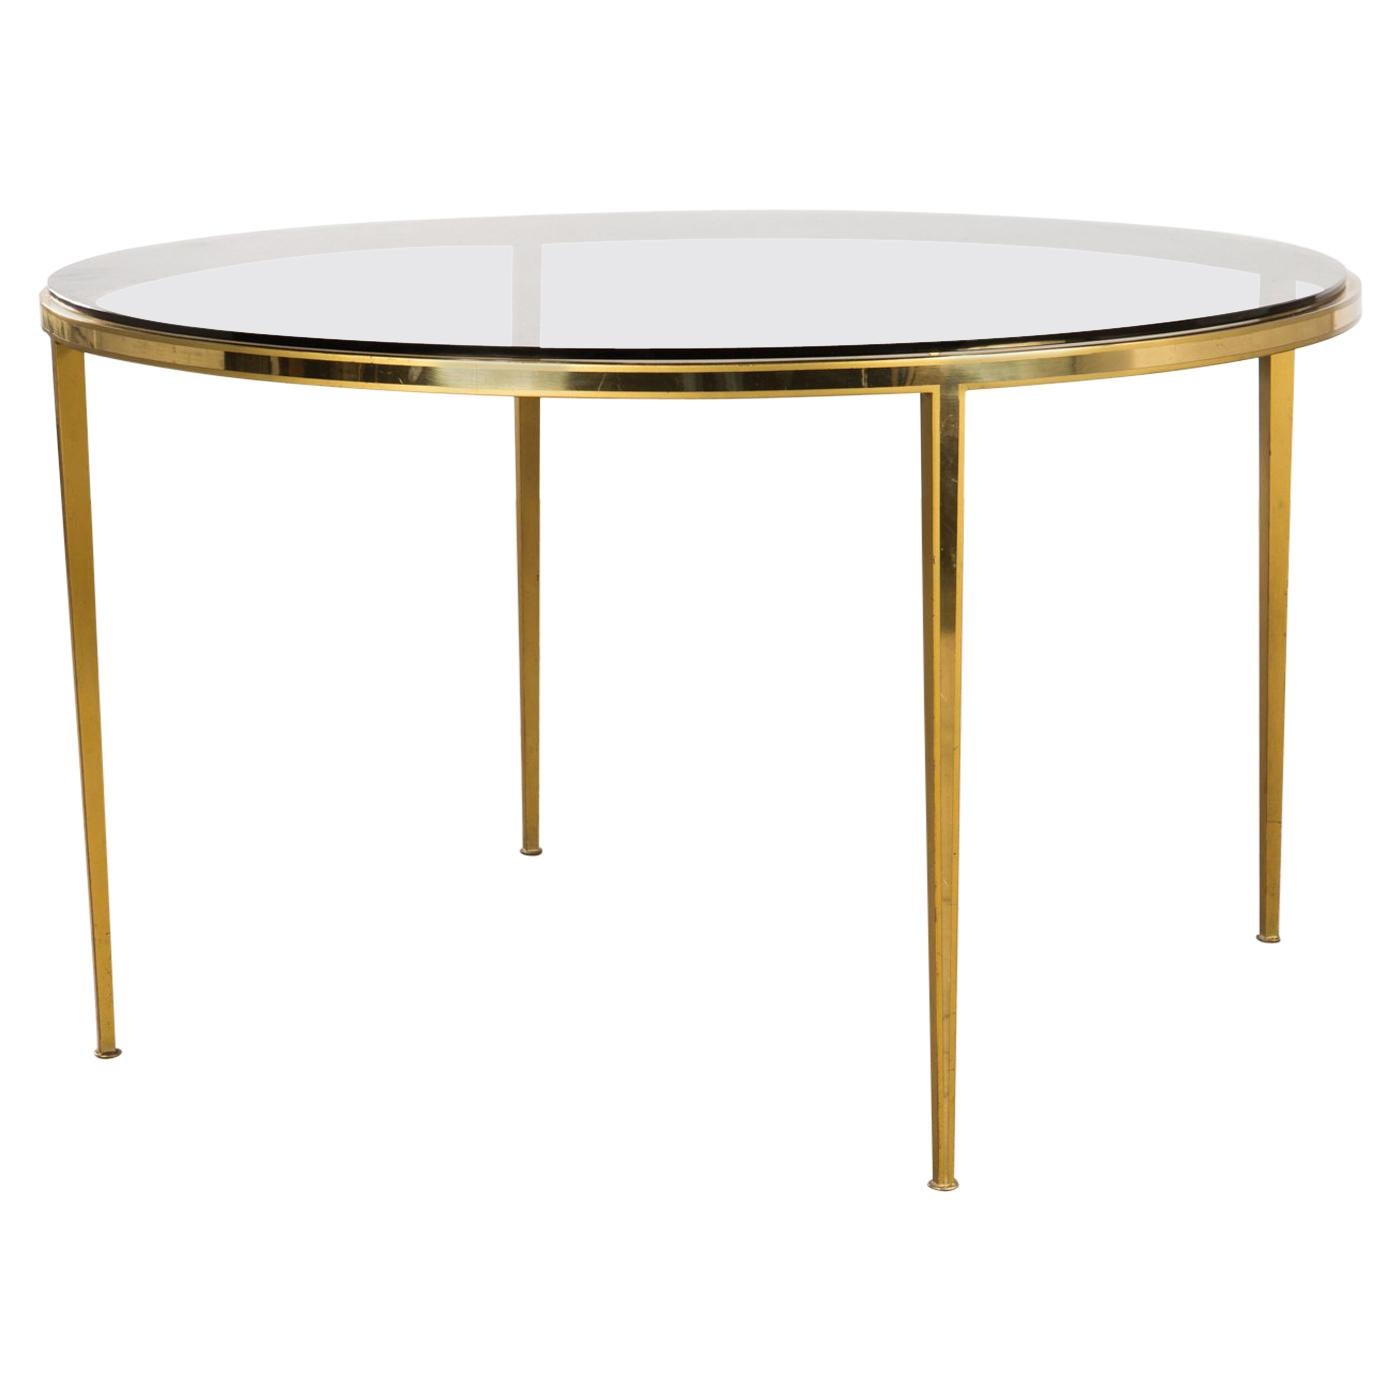 Golden circular Mid-Century Modern Brass coffee table by Vereinigte Werkstätten